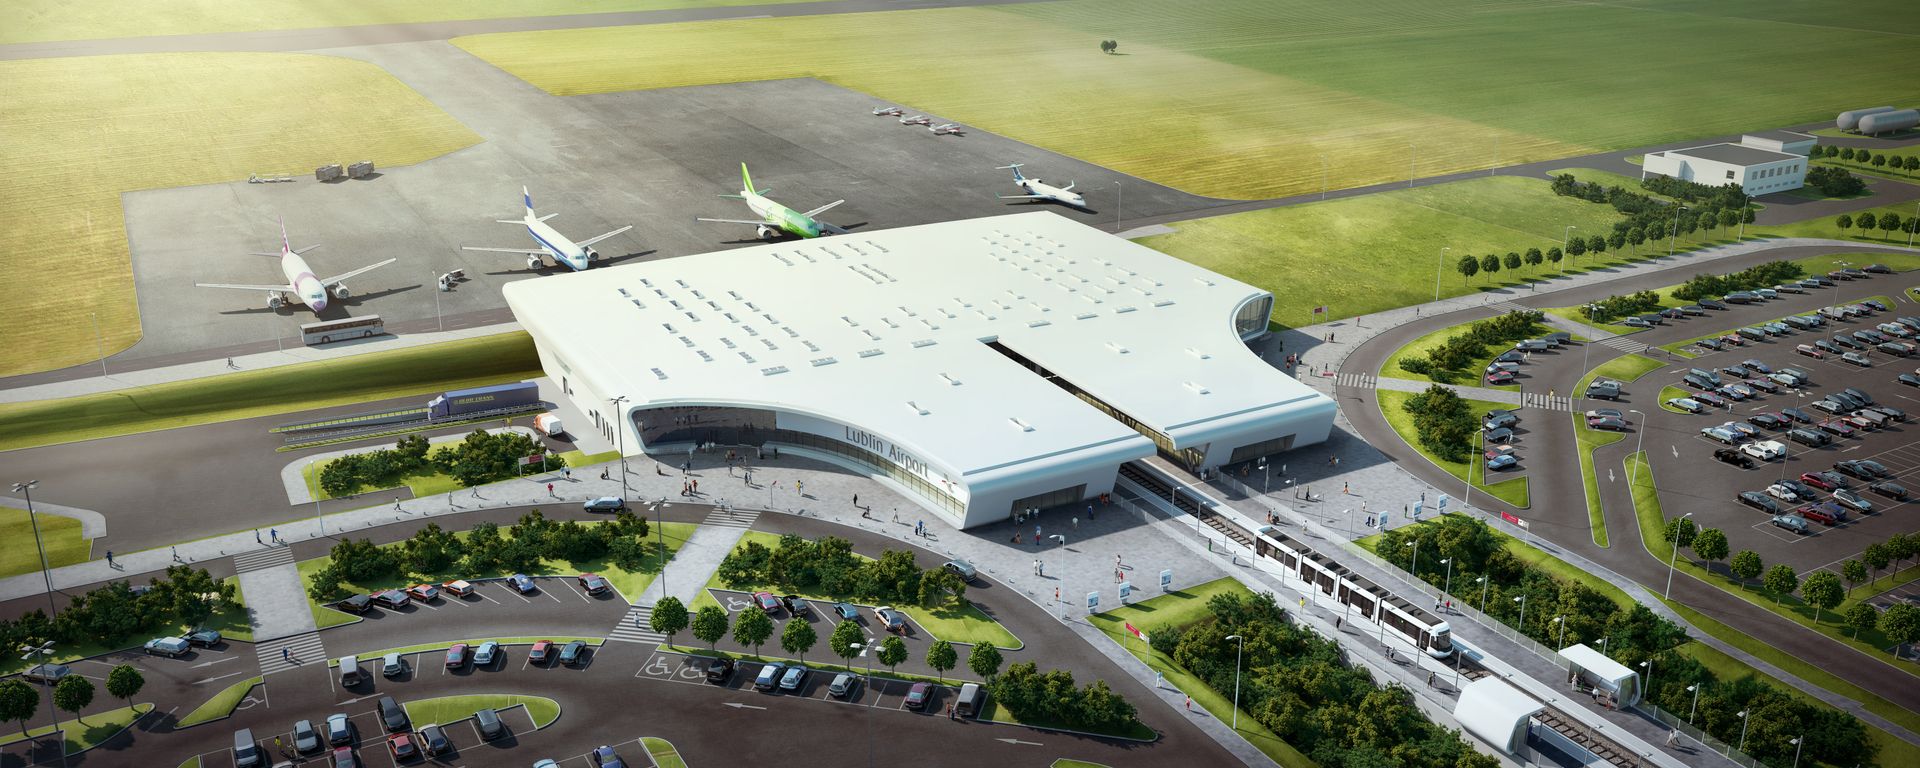  Budimex zbuduje terminal lubelskiego lotniska